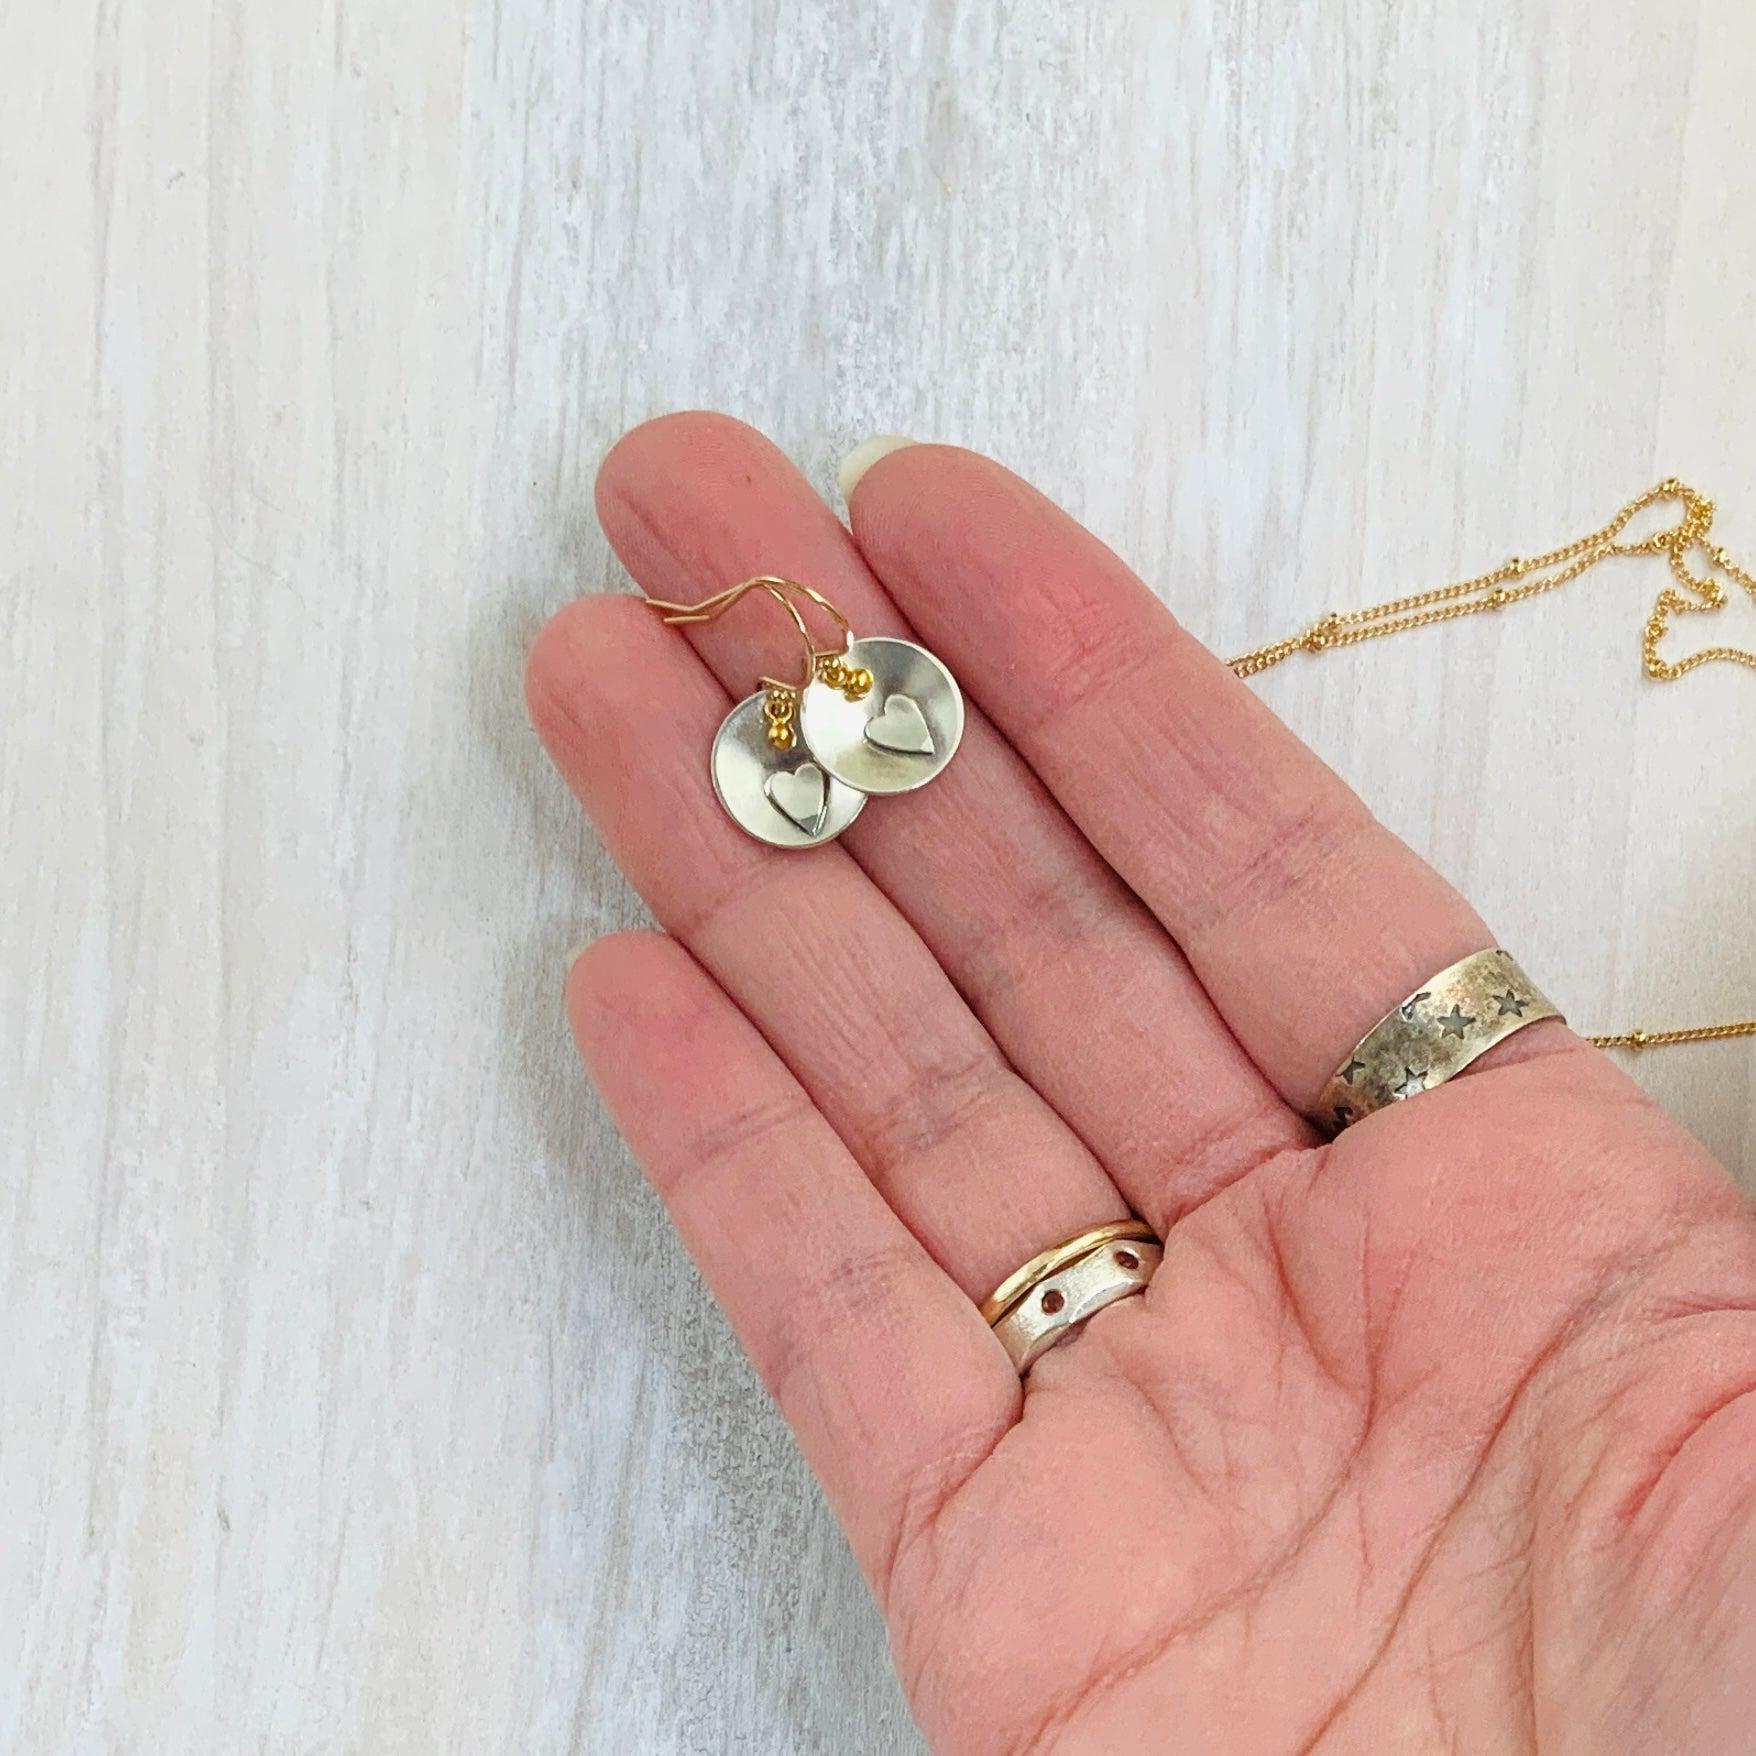 Gold filled Heart earrings